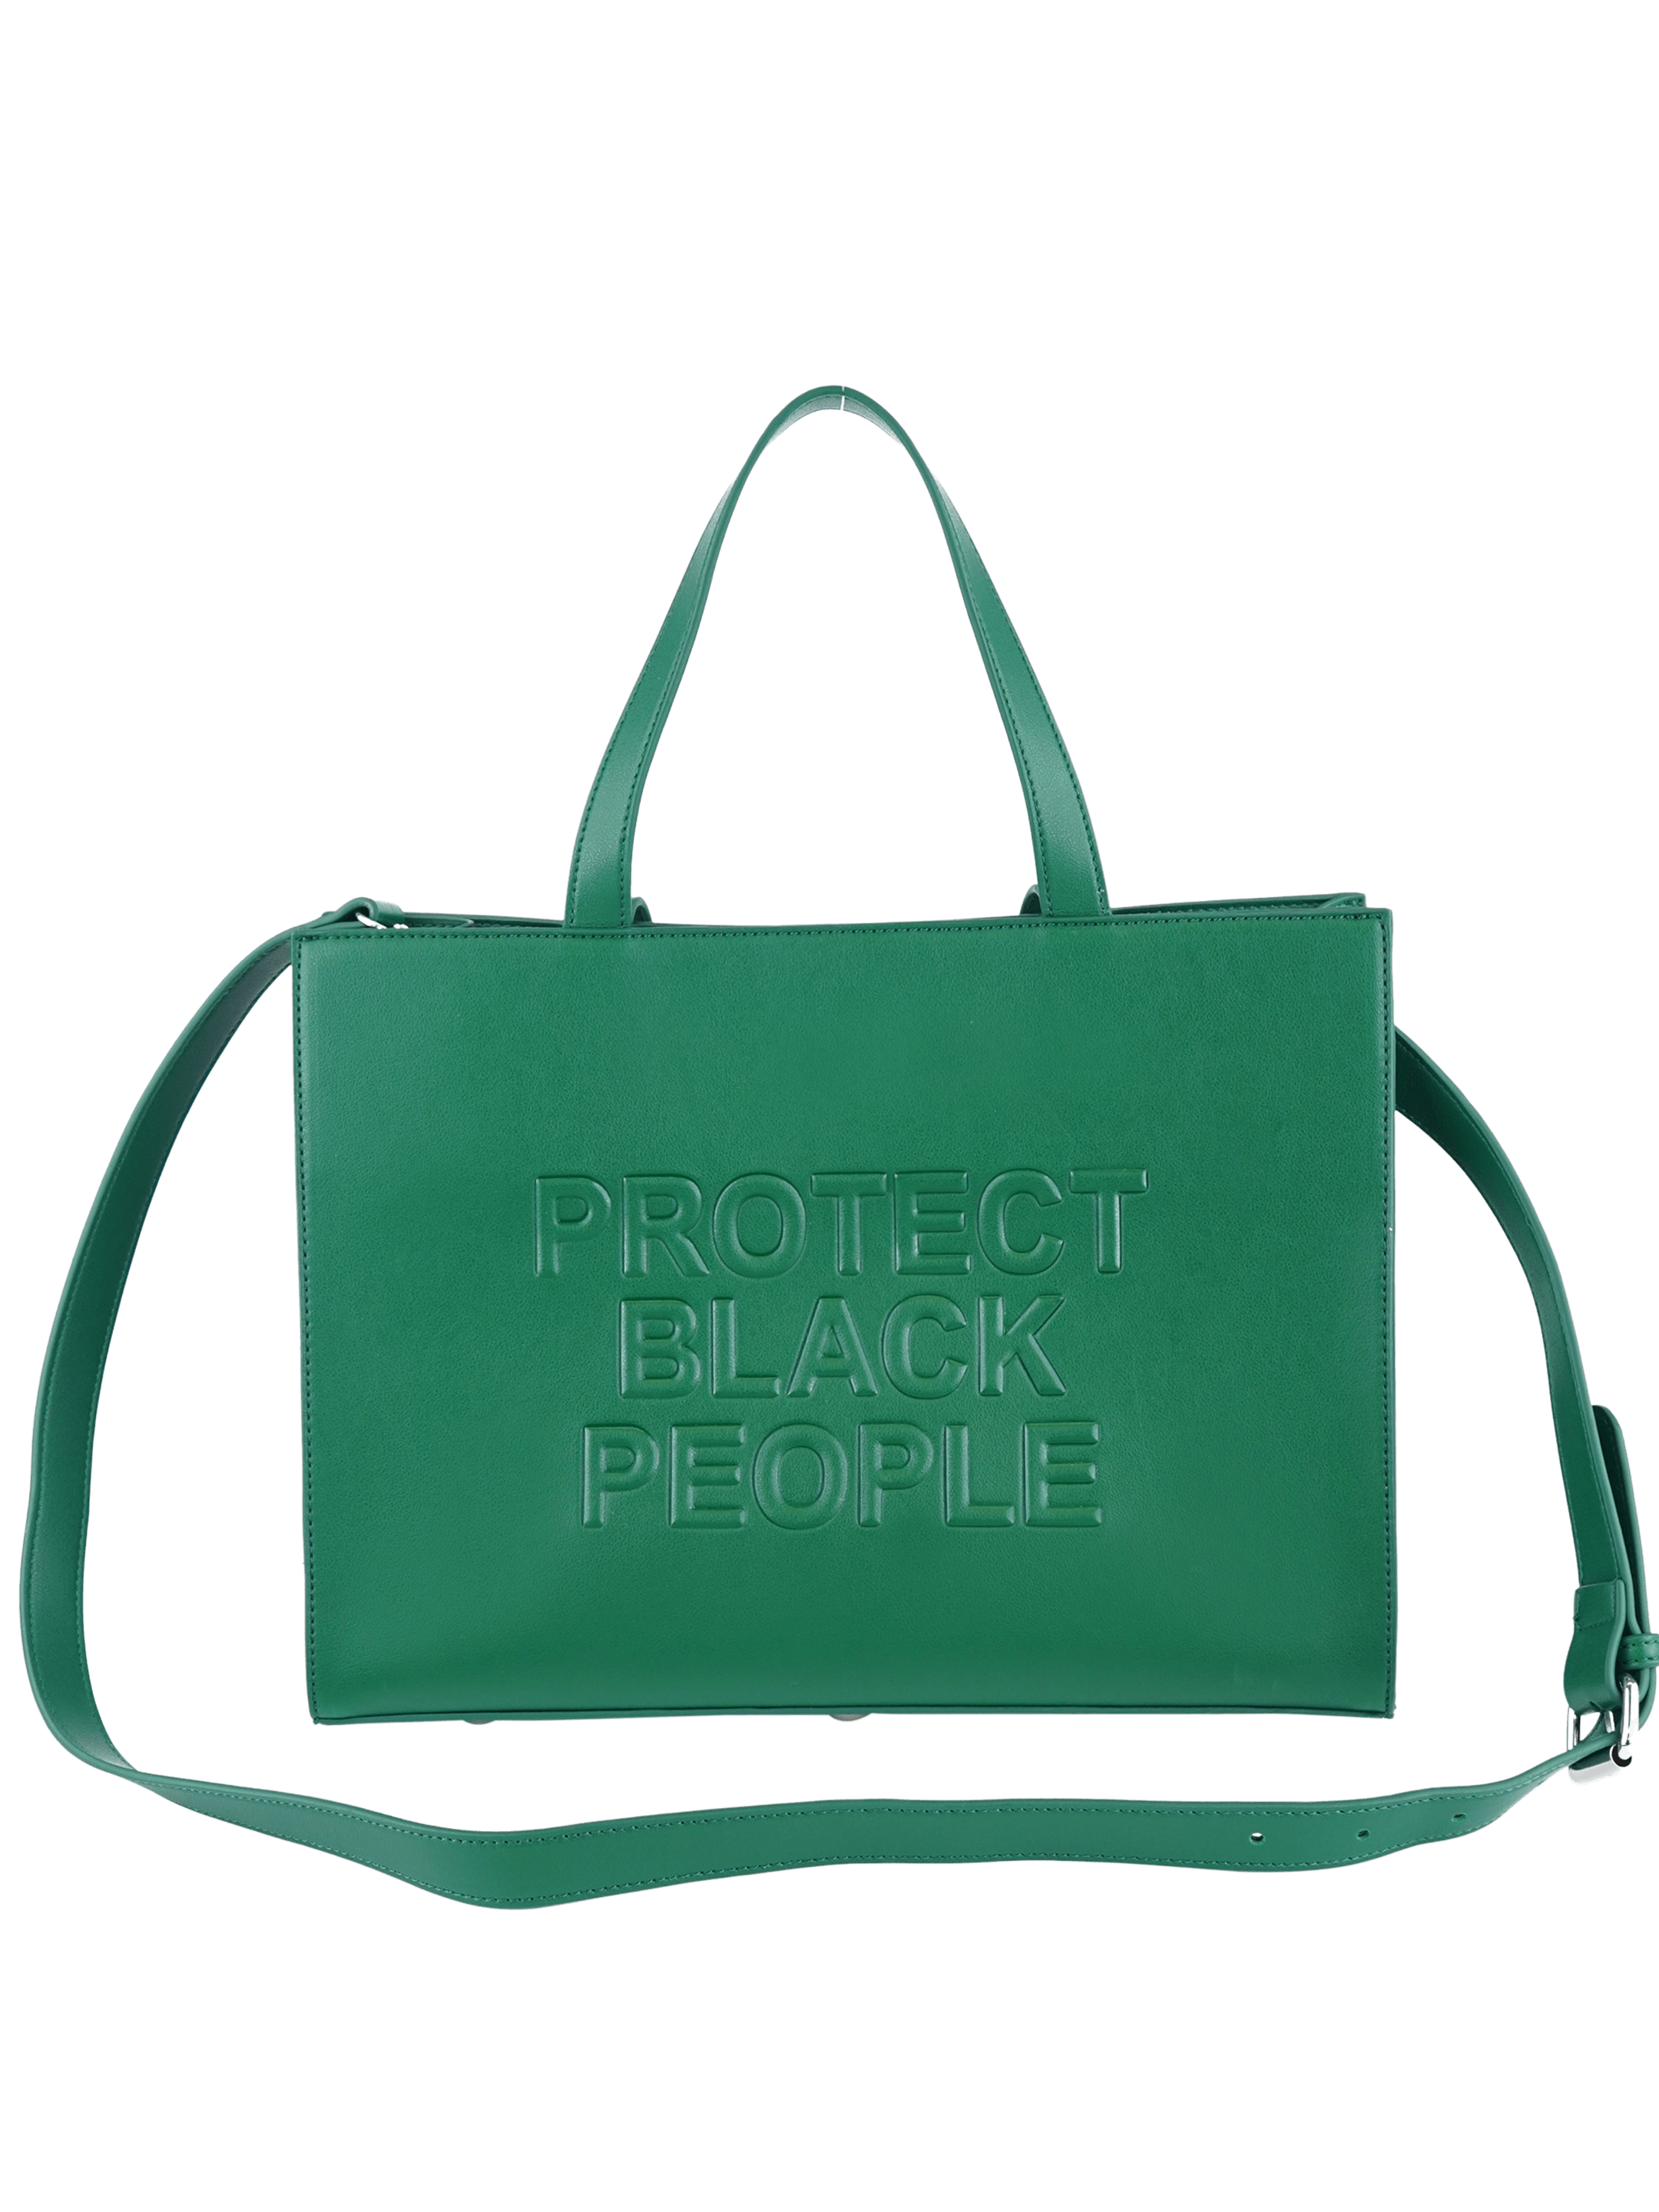 Ostrich Handbag for Women Genuine Ostrich Leather - Everweek